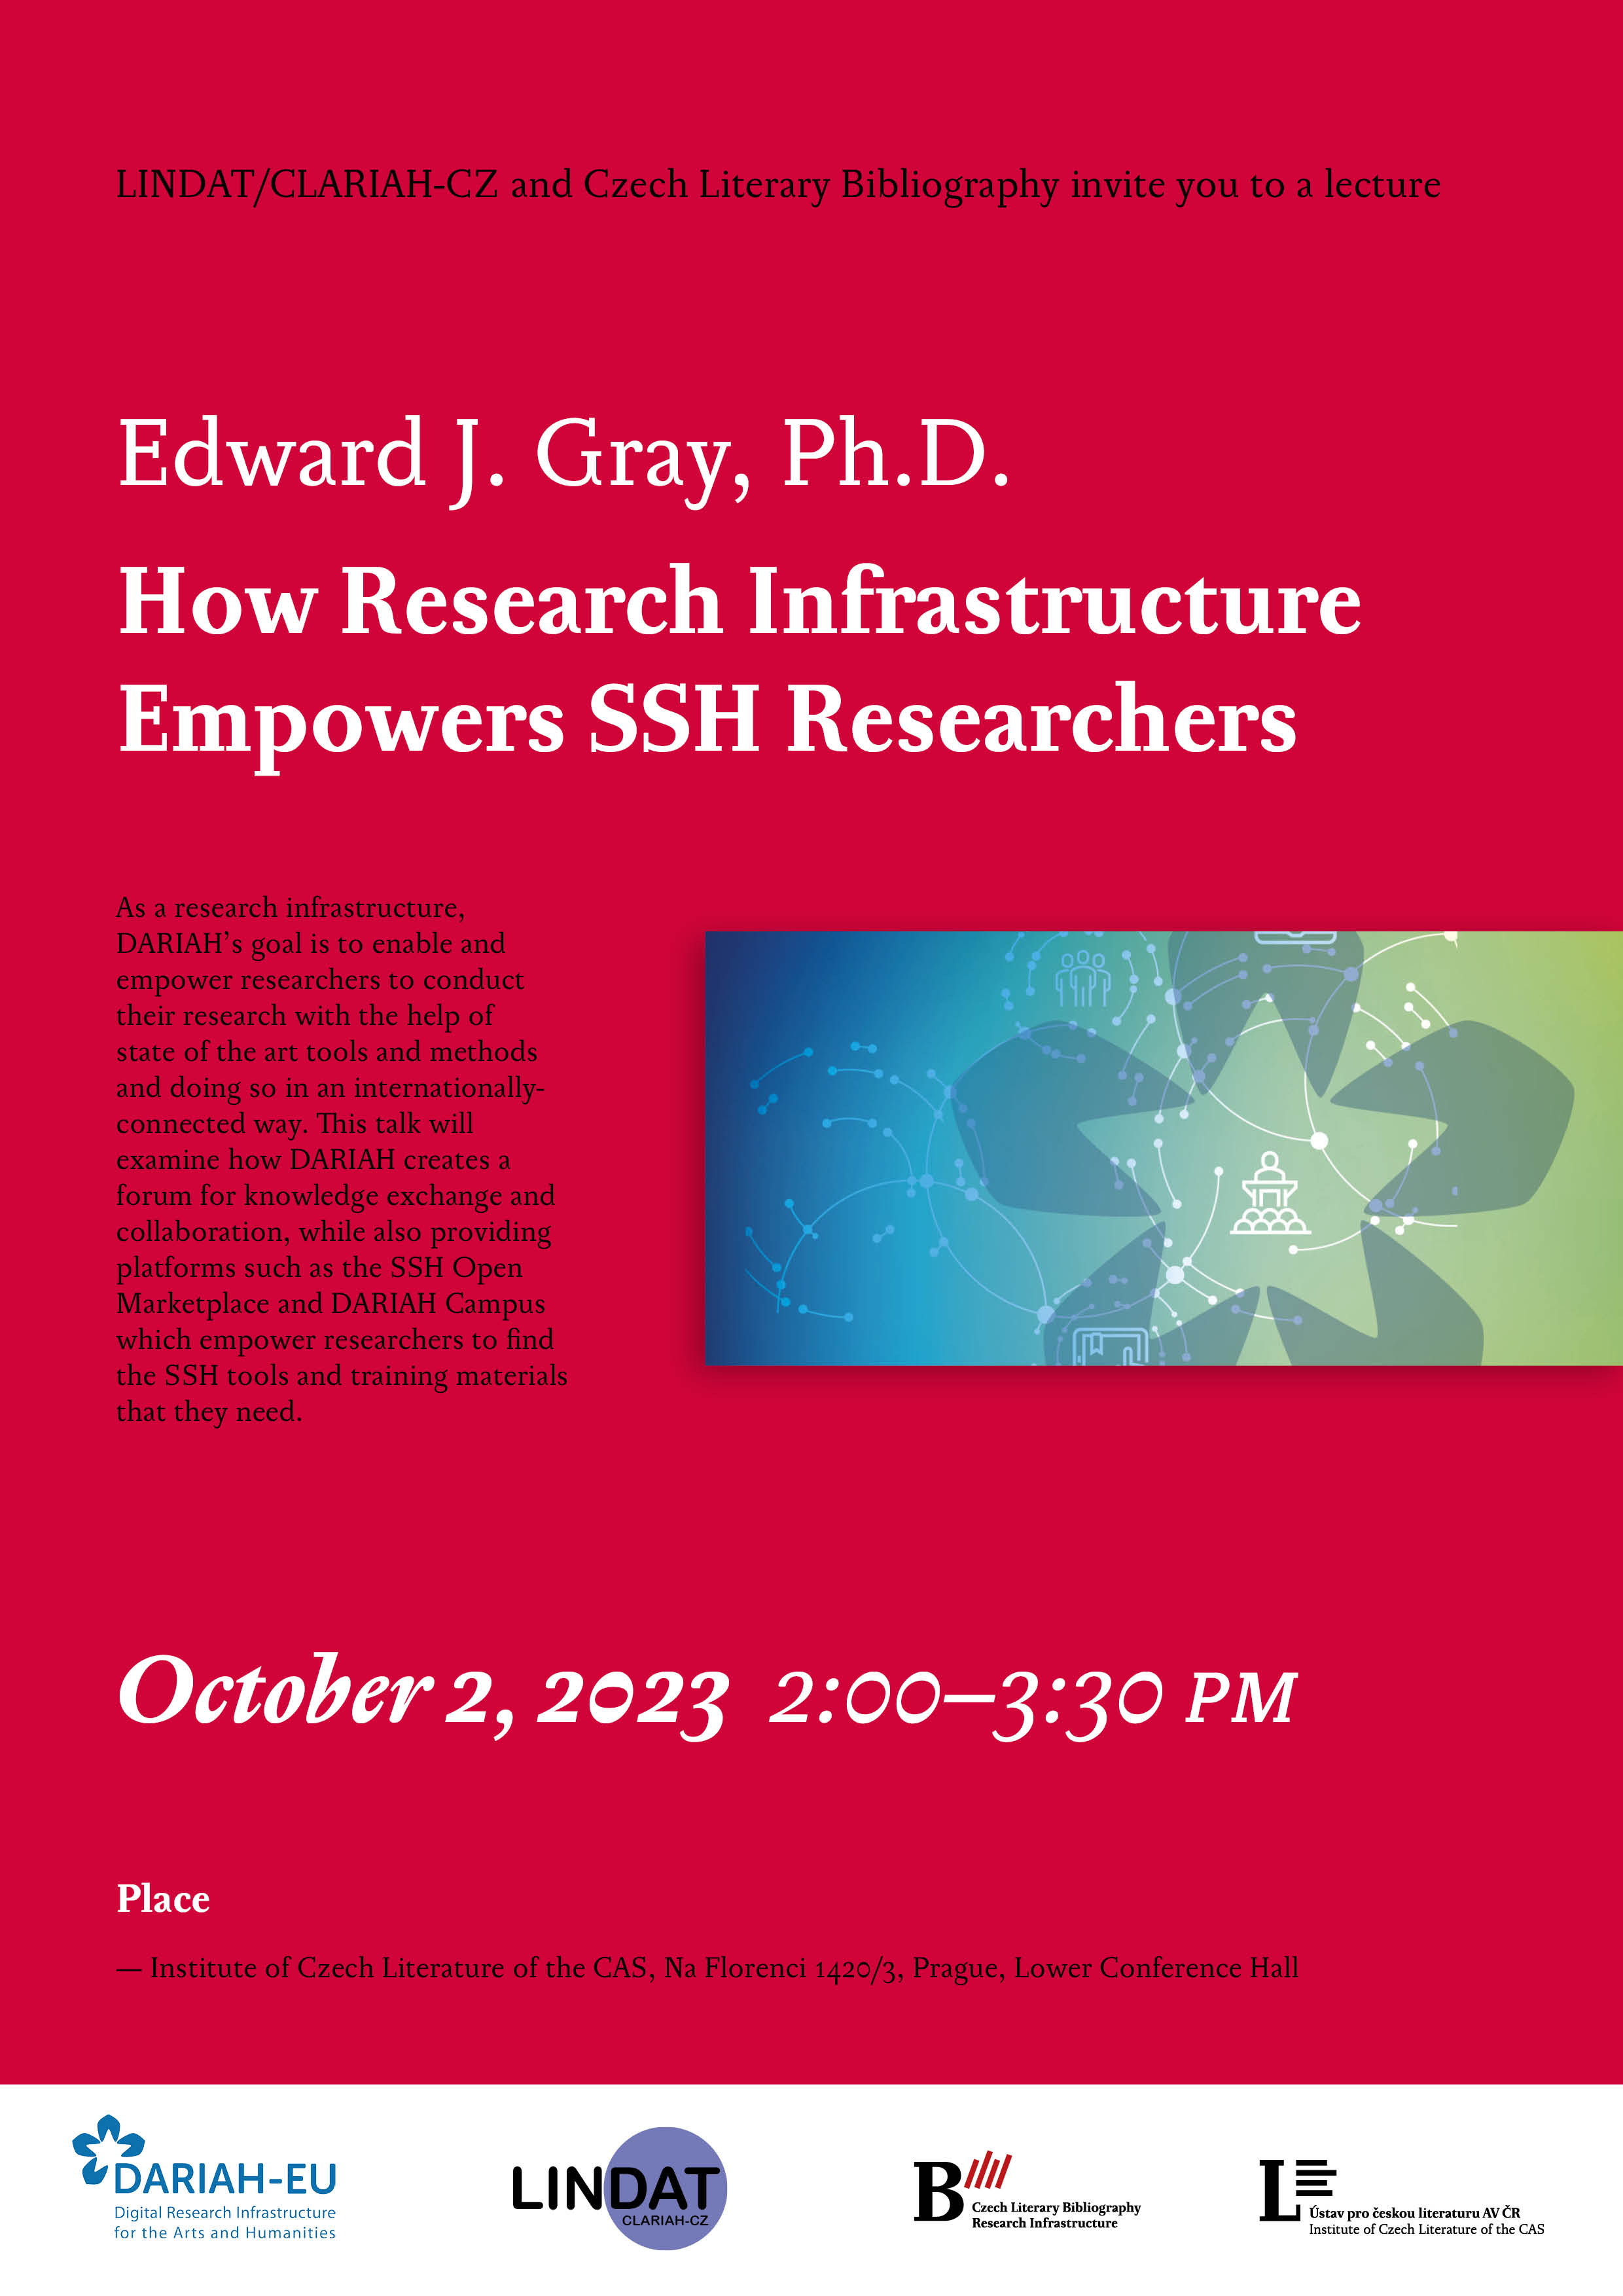 pozvánka na přednášku Edwarda J. Graye 2. 10. 2023